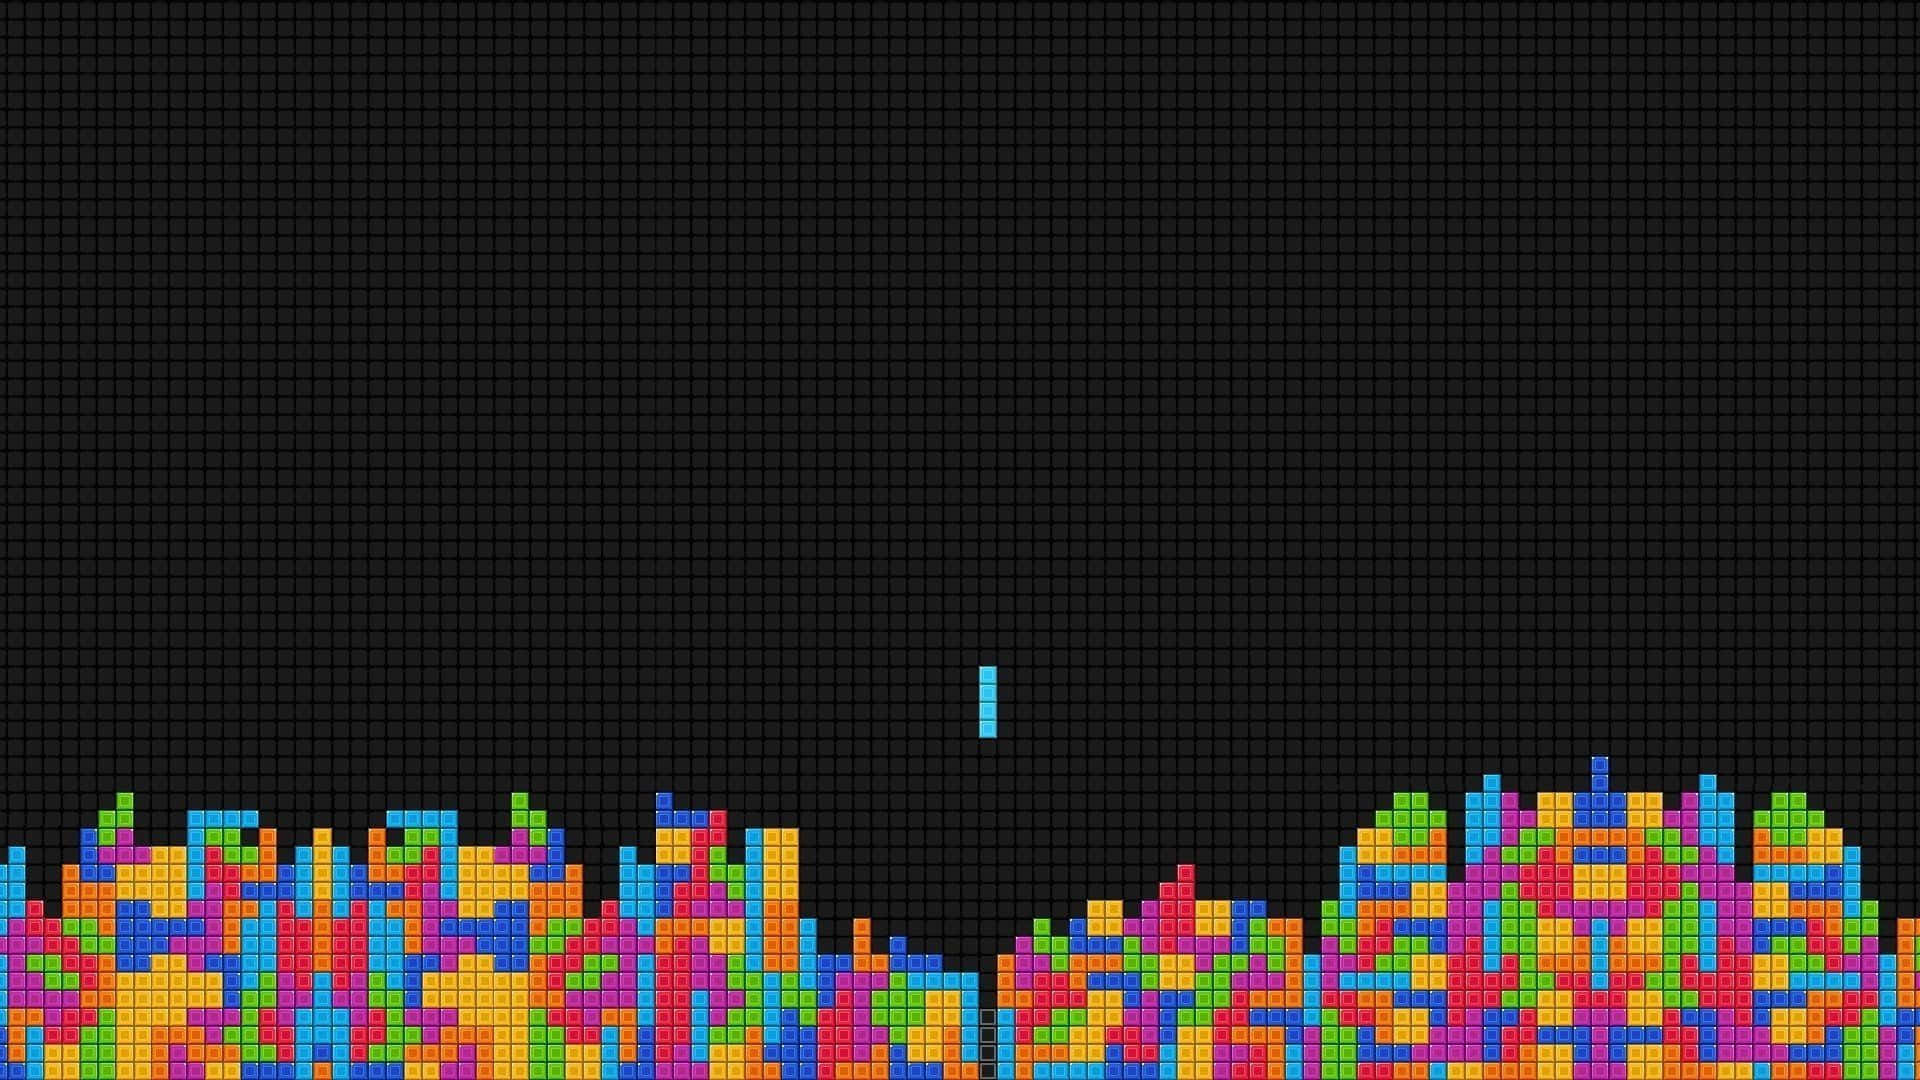 Vibrant Tetris Blocks Falling into Place